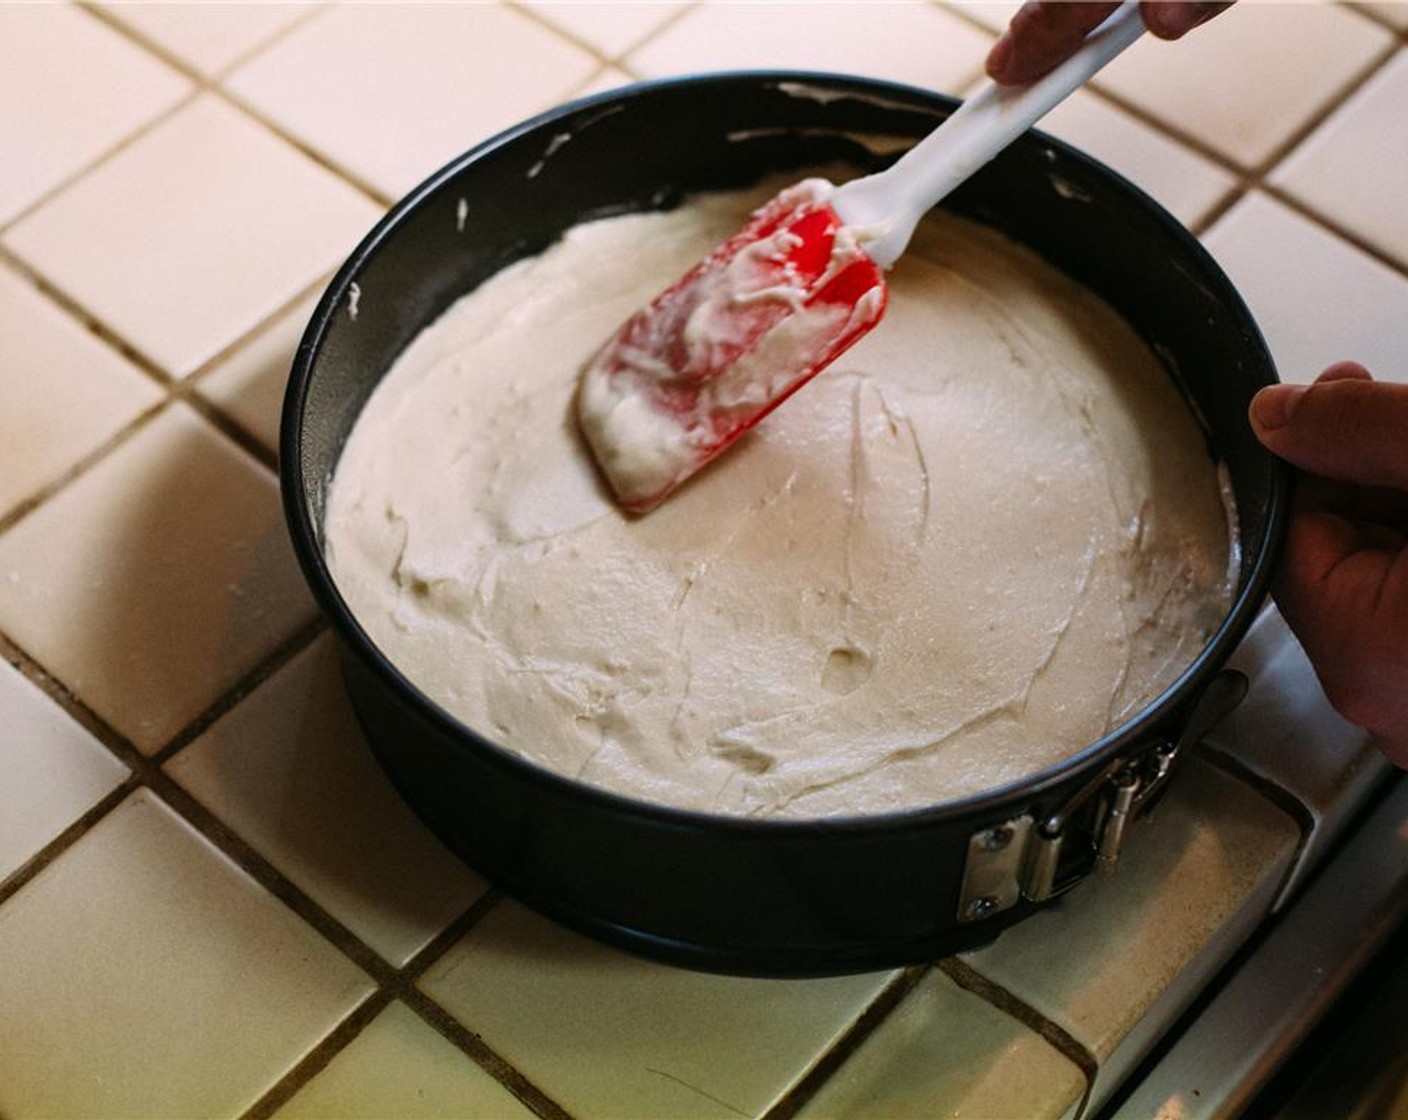 Schritt 6 Den Teig in die vorbereitete Kuchenform geben und gleichmässig verteilen und darauf achten, dass die Oberfläche glatt ist. Kuchenform auf der Arbeitsfläche leicht aufschlagen, um Luftlöcher zu entfernen. Den Kuchen in den vorgeheizten Ofen geben und für 25-30 Minuten backen, bis der Teig fest ist und ein Zahnstocher in der Mitte sauber herauskommt. Mindestens 1 Stunde gut abkühlen lassen. In der Zwischenzeit die Buttercreme zubereiten.